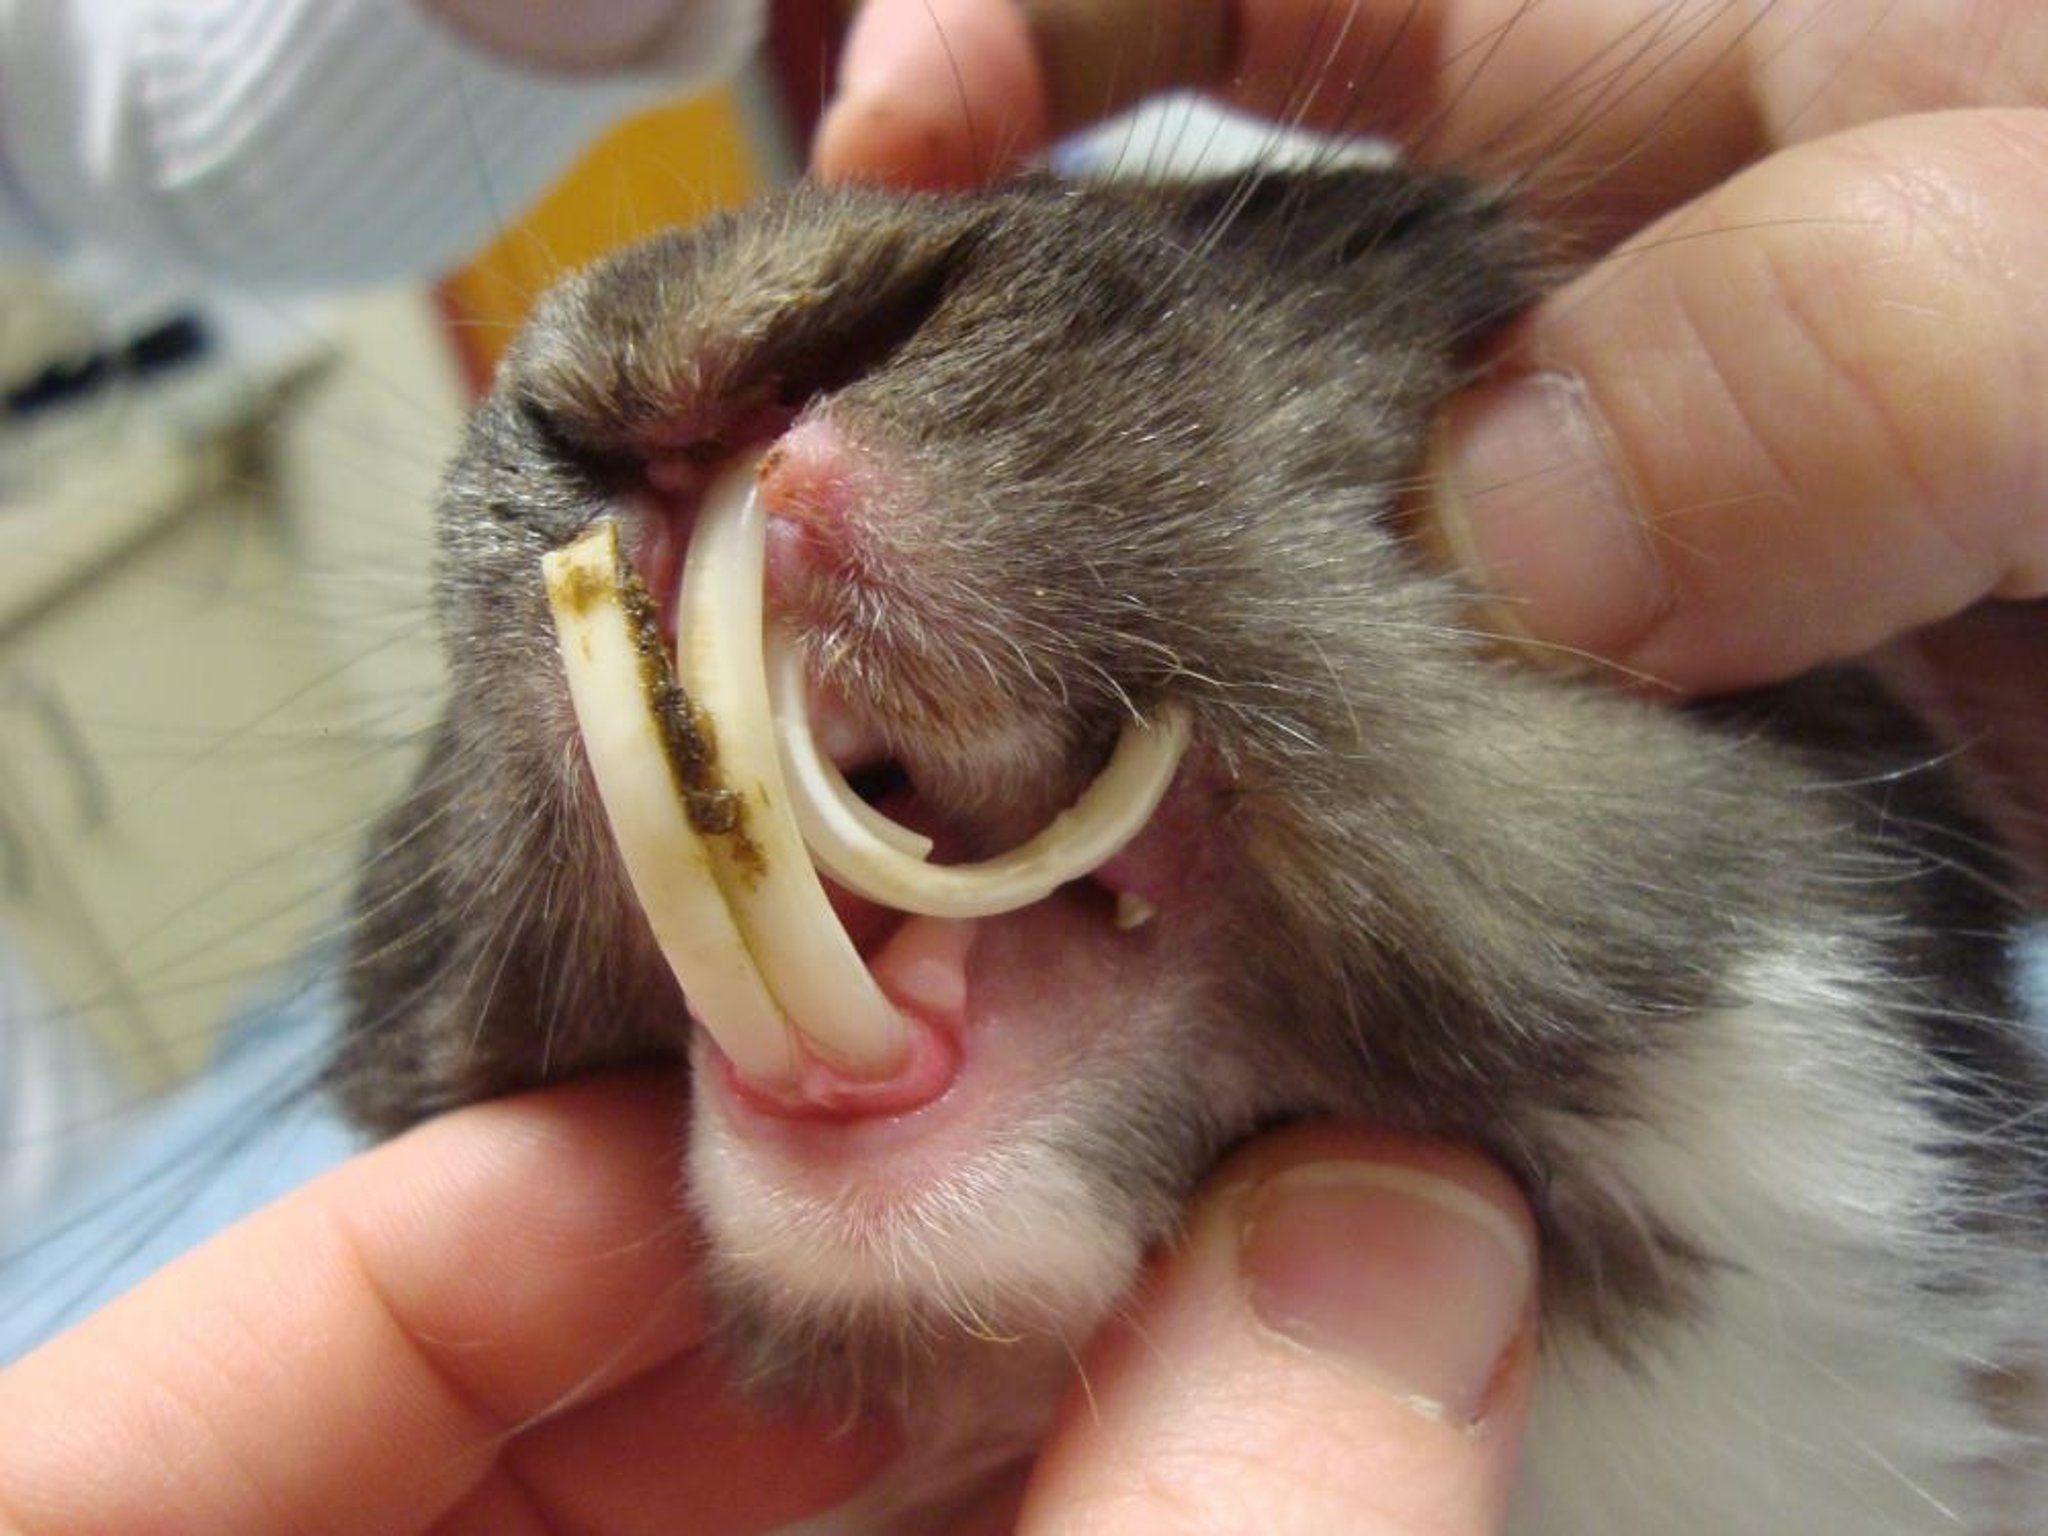 Overgrown incisor teeth, rabbit